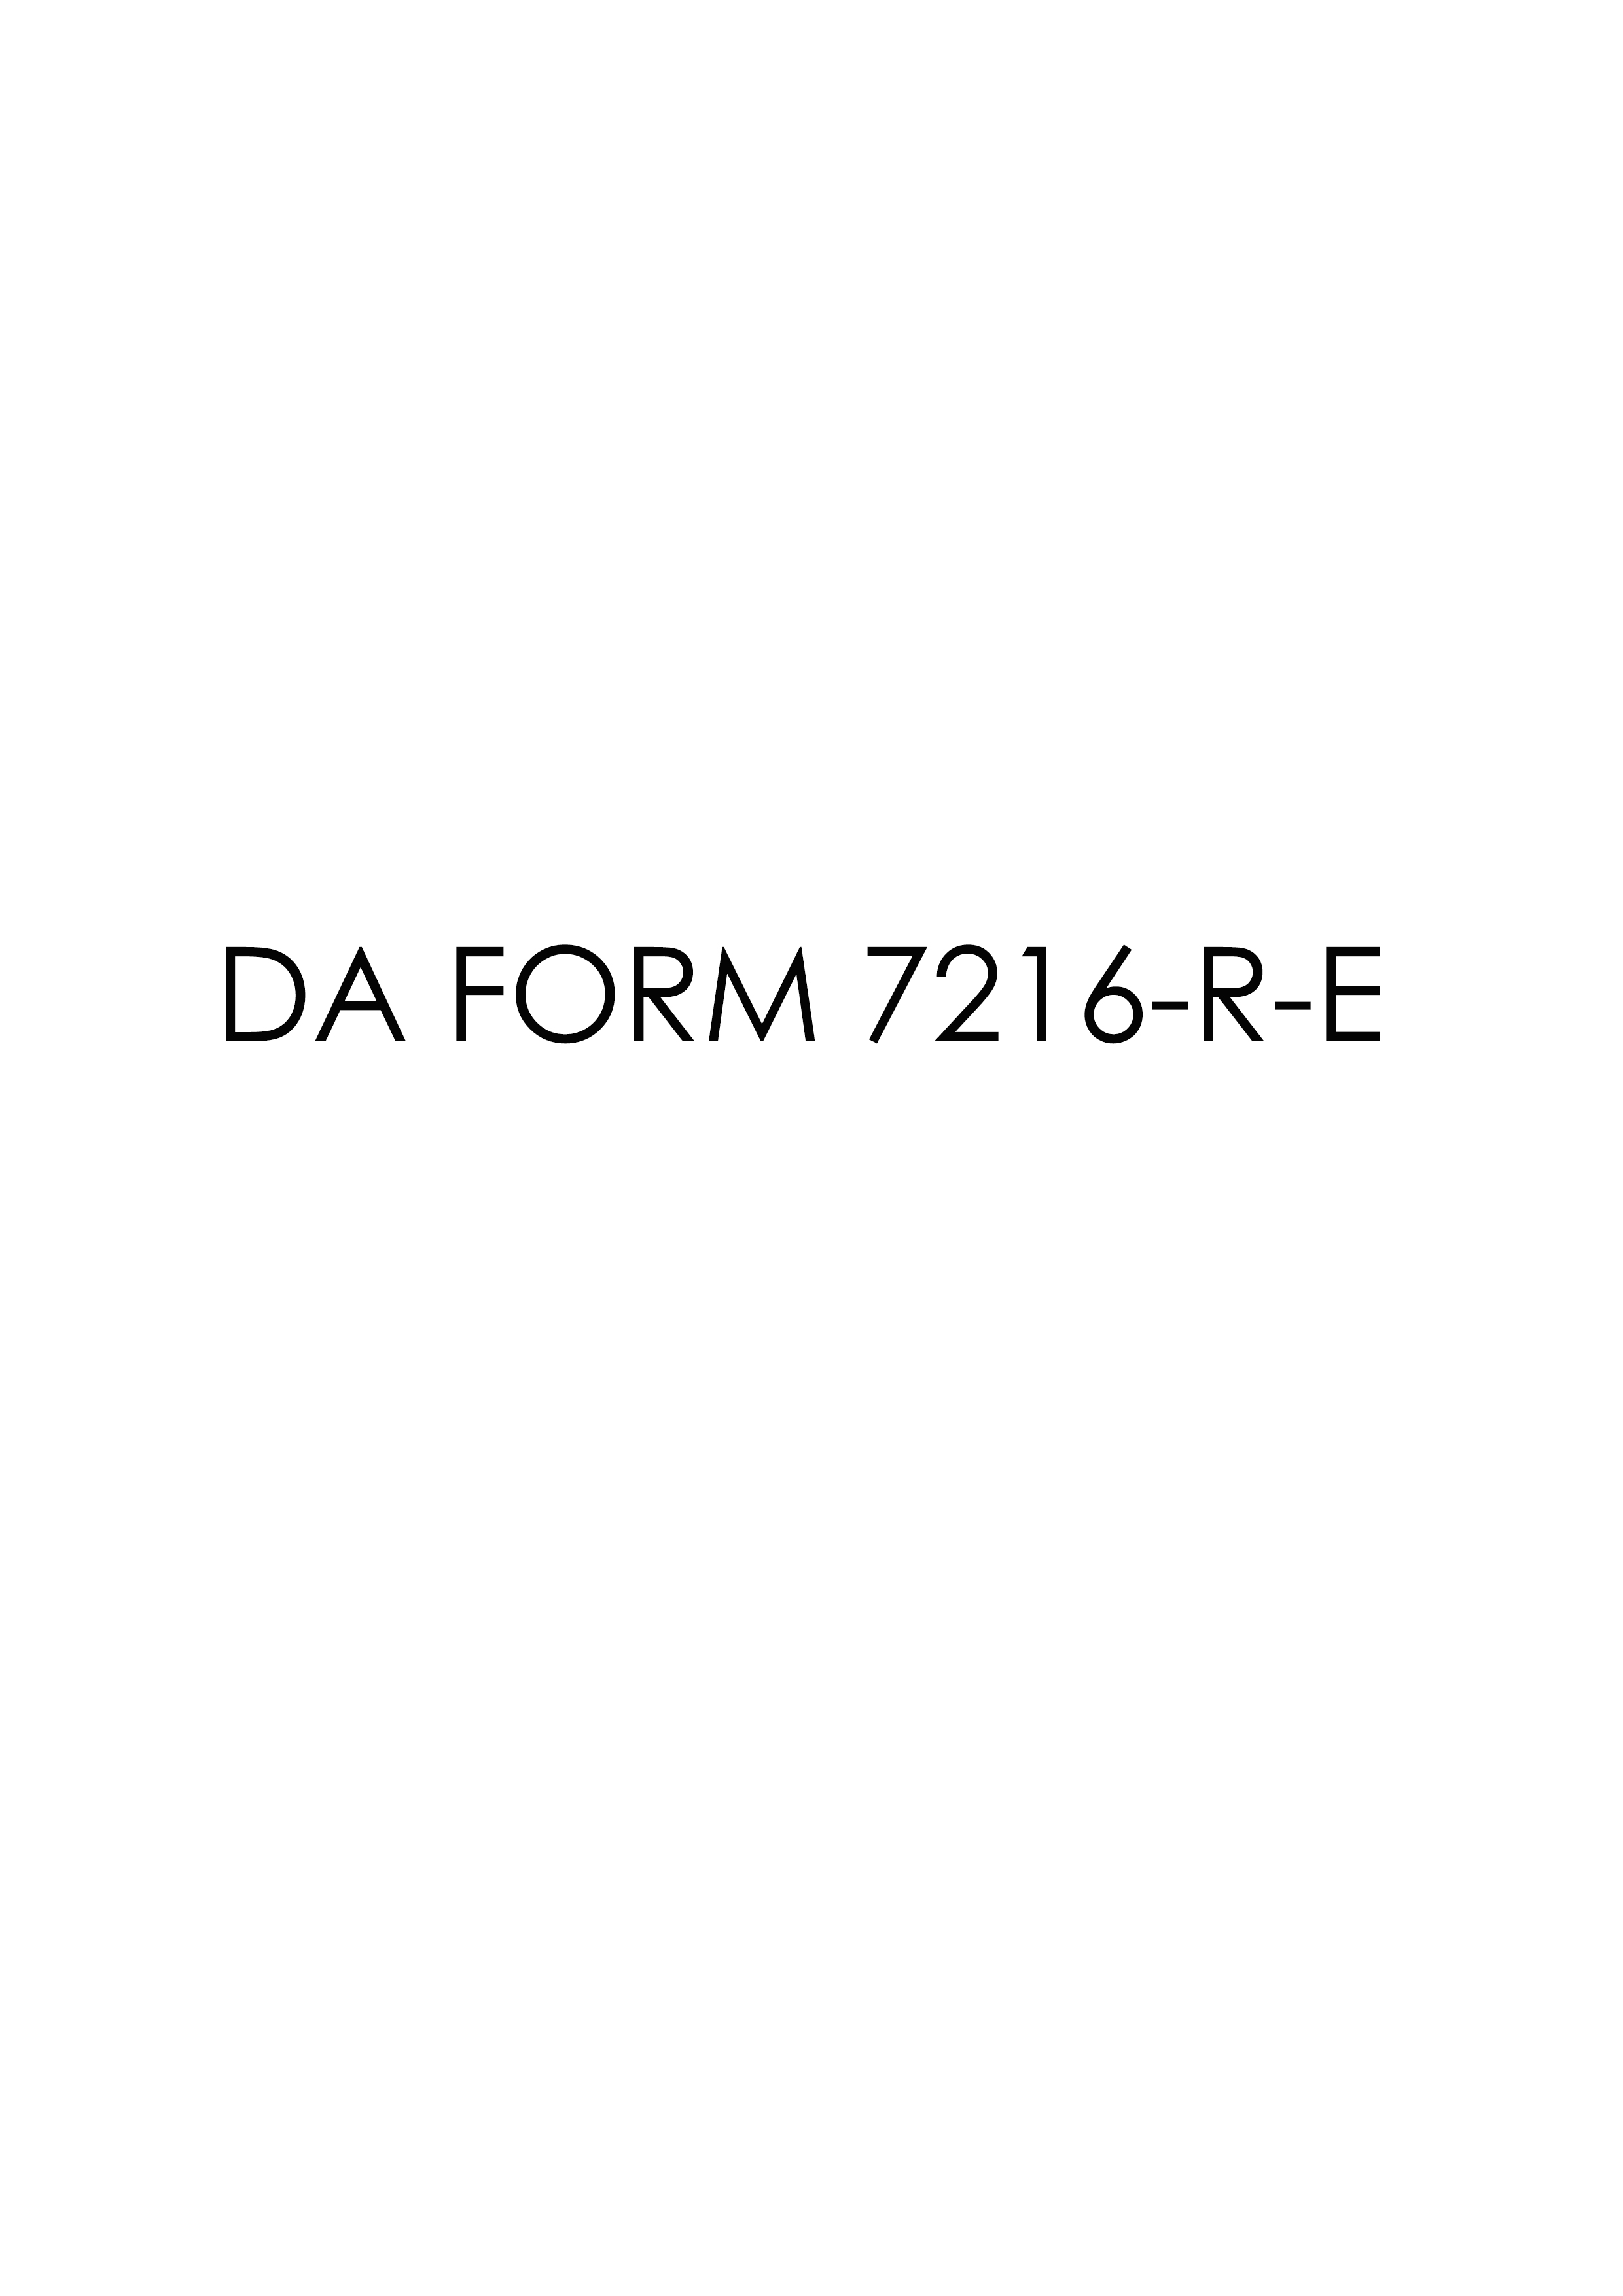 Download Fillable da Form 7216-R-E